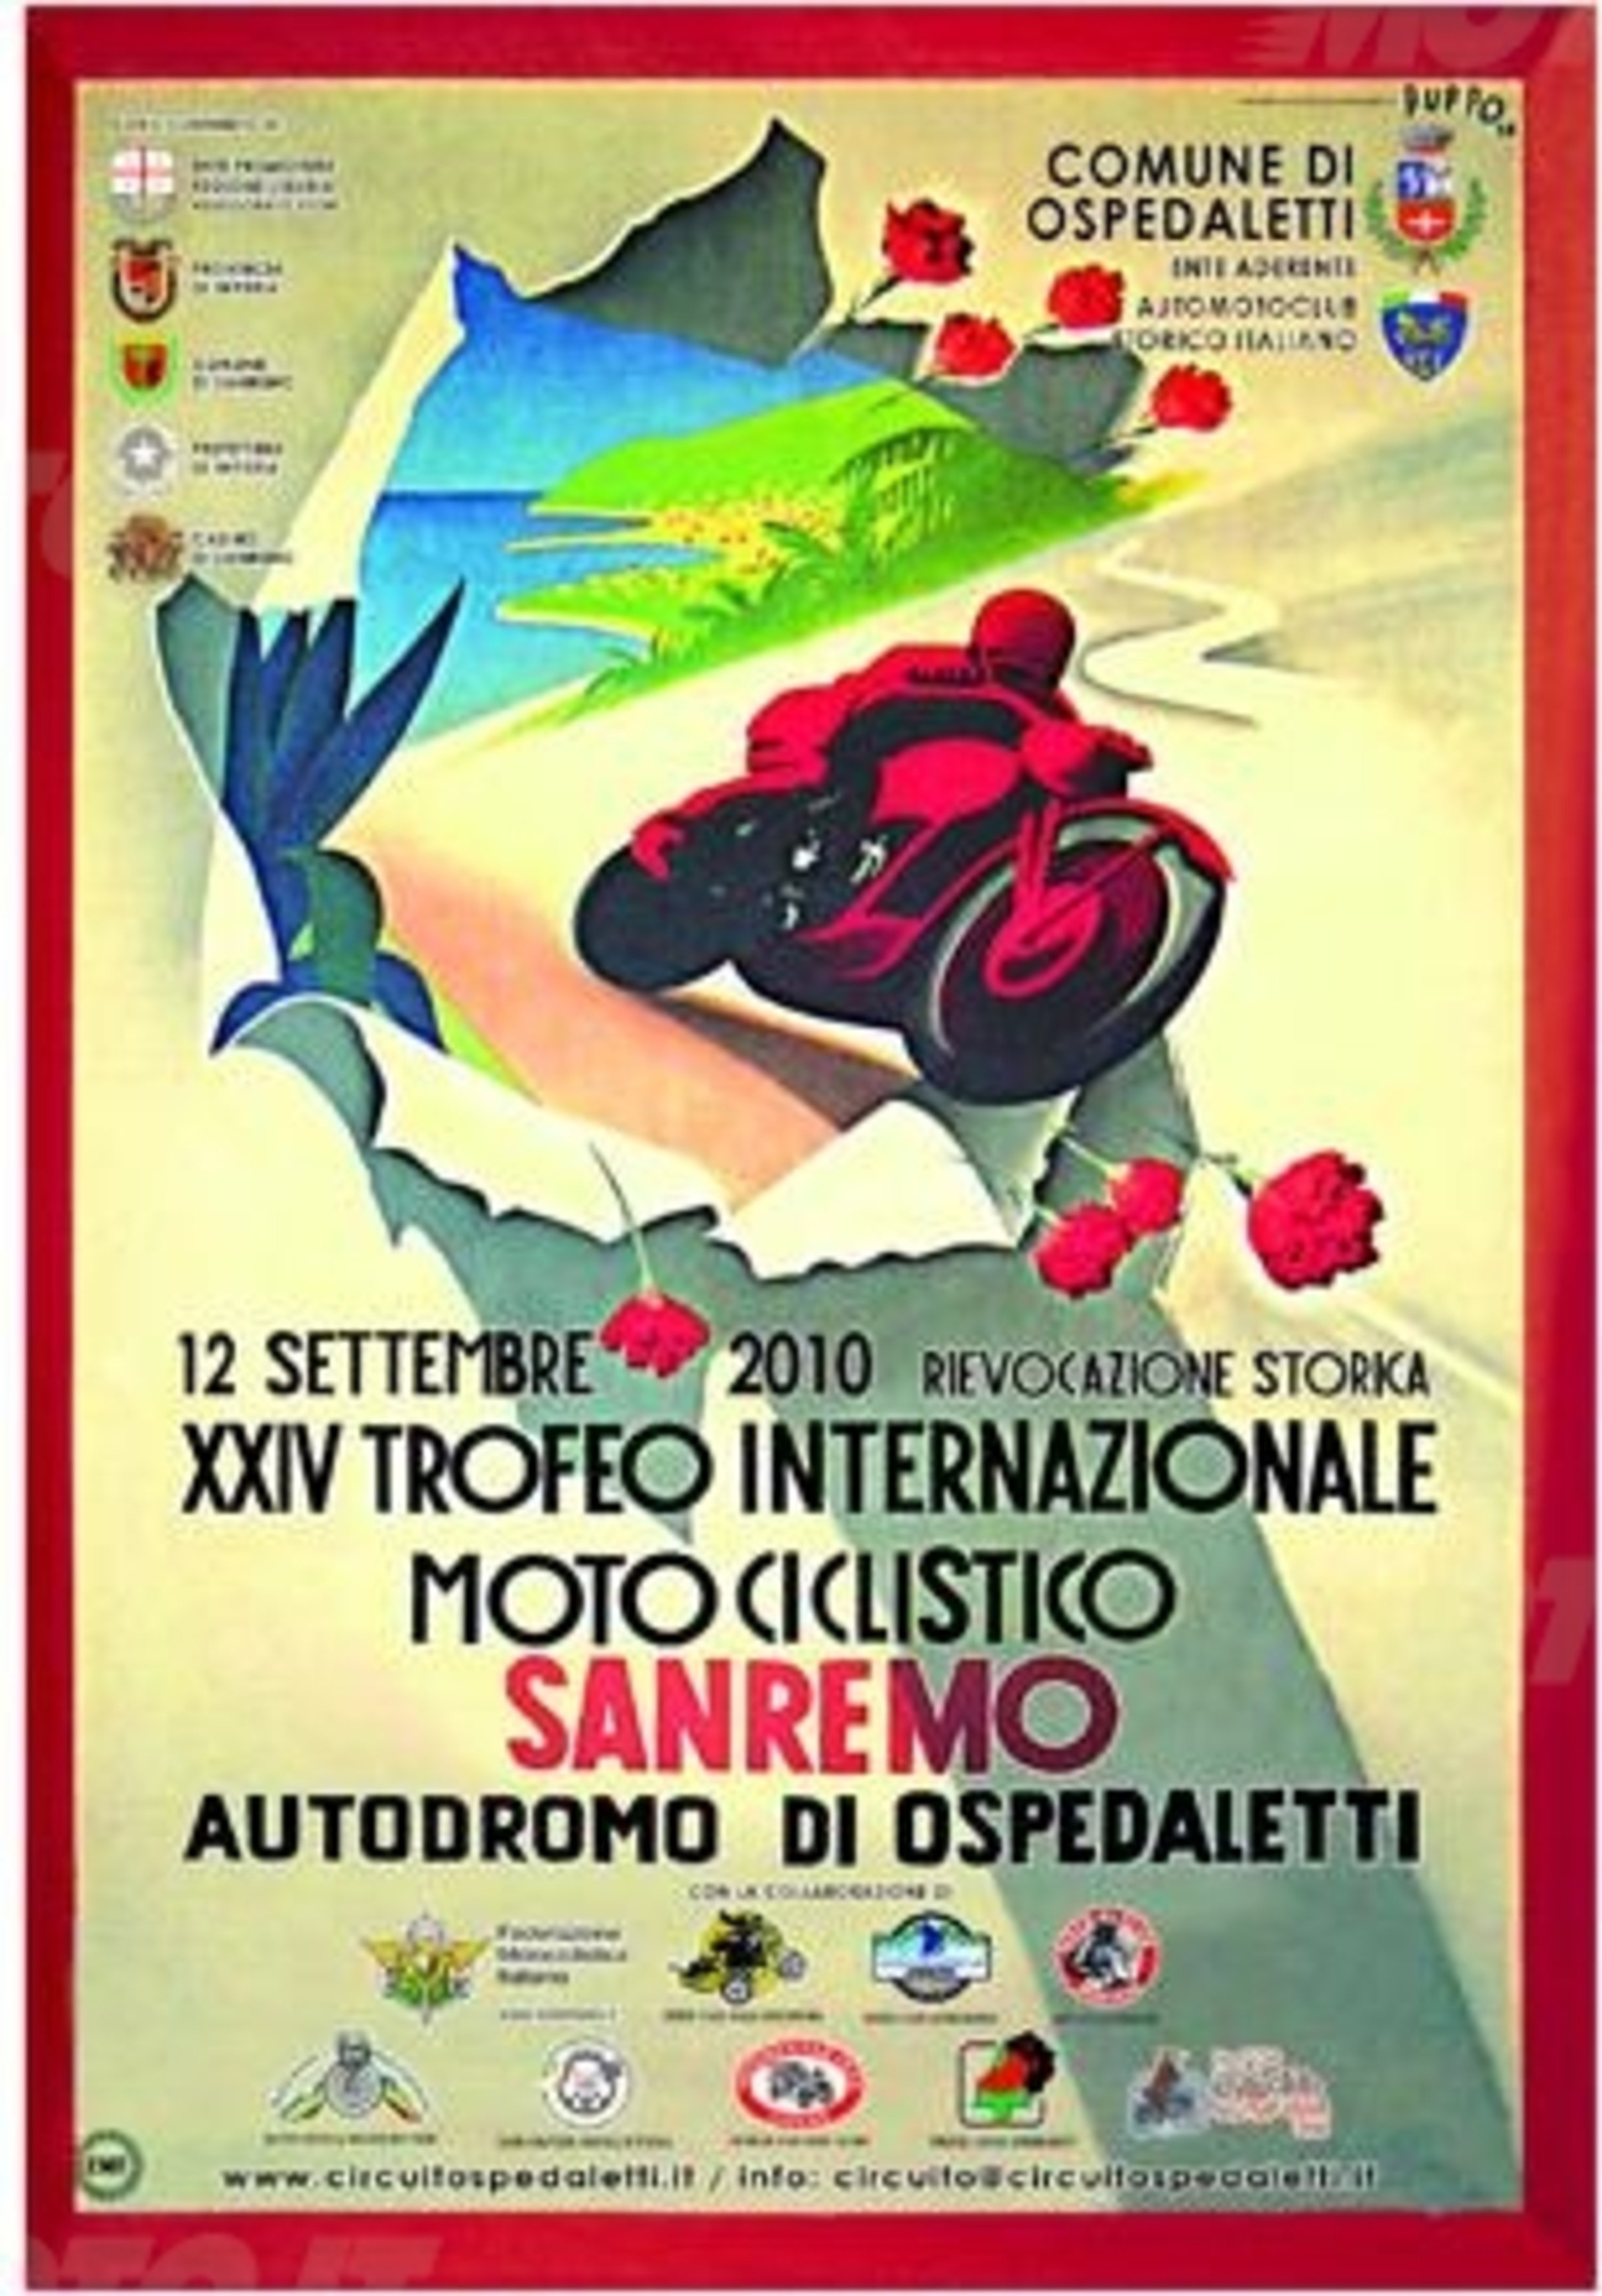 XXIV Trofeo Internazionale Motociclistico Sanremo a Ospedaletti